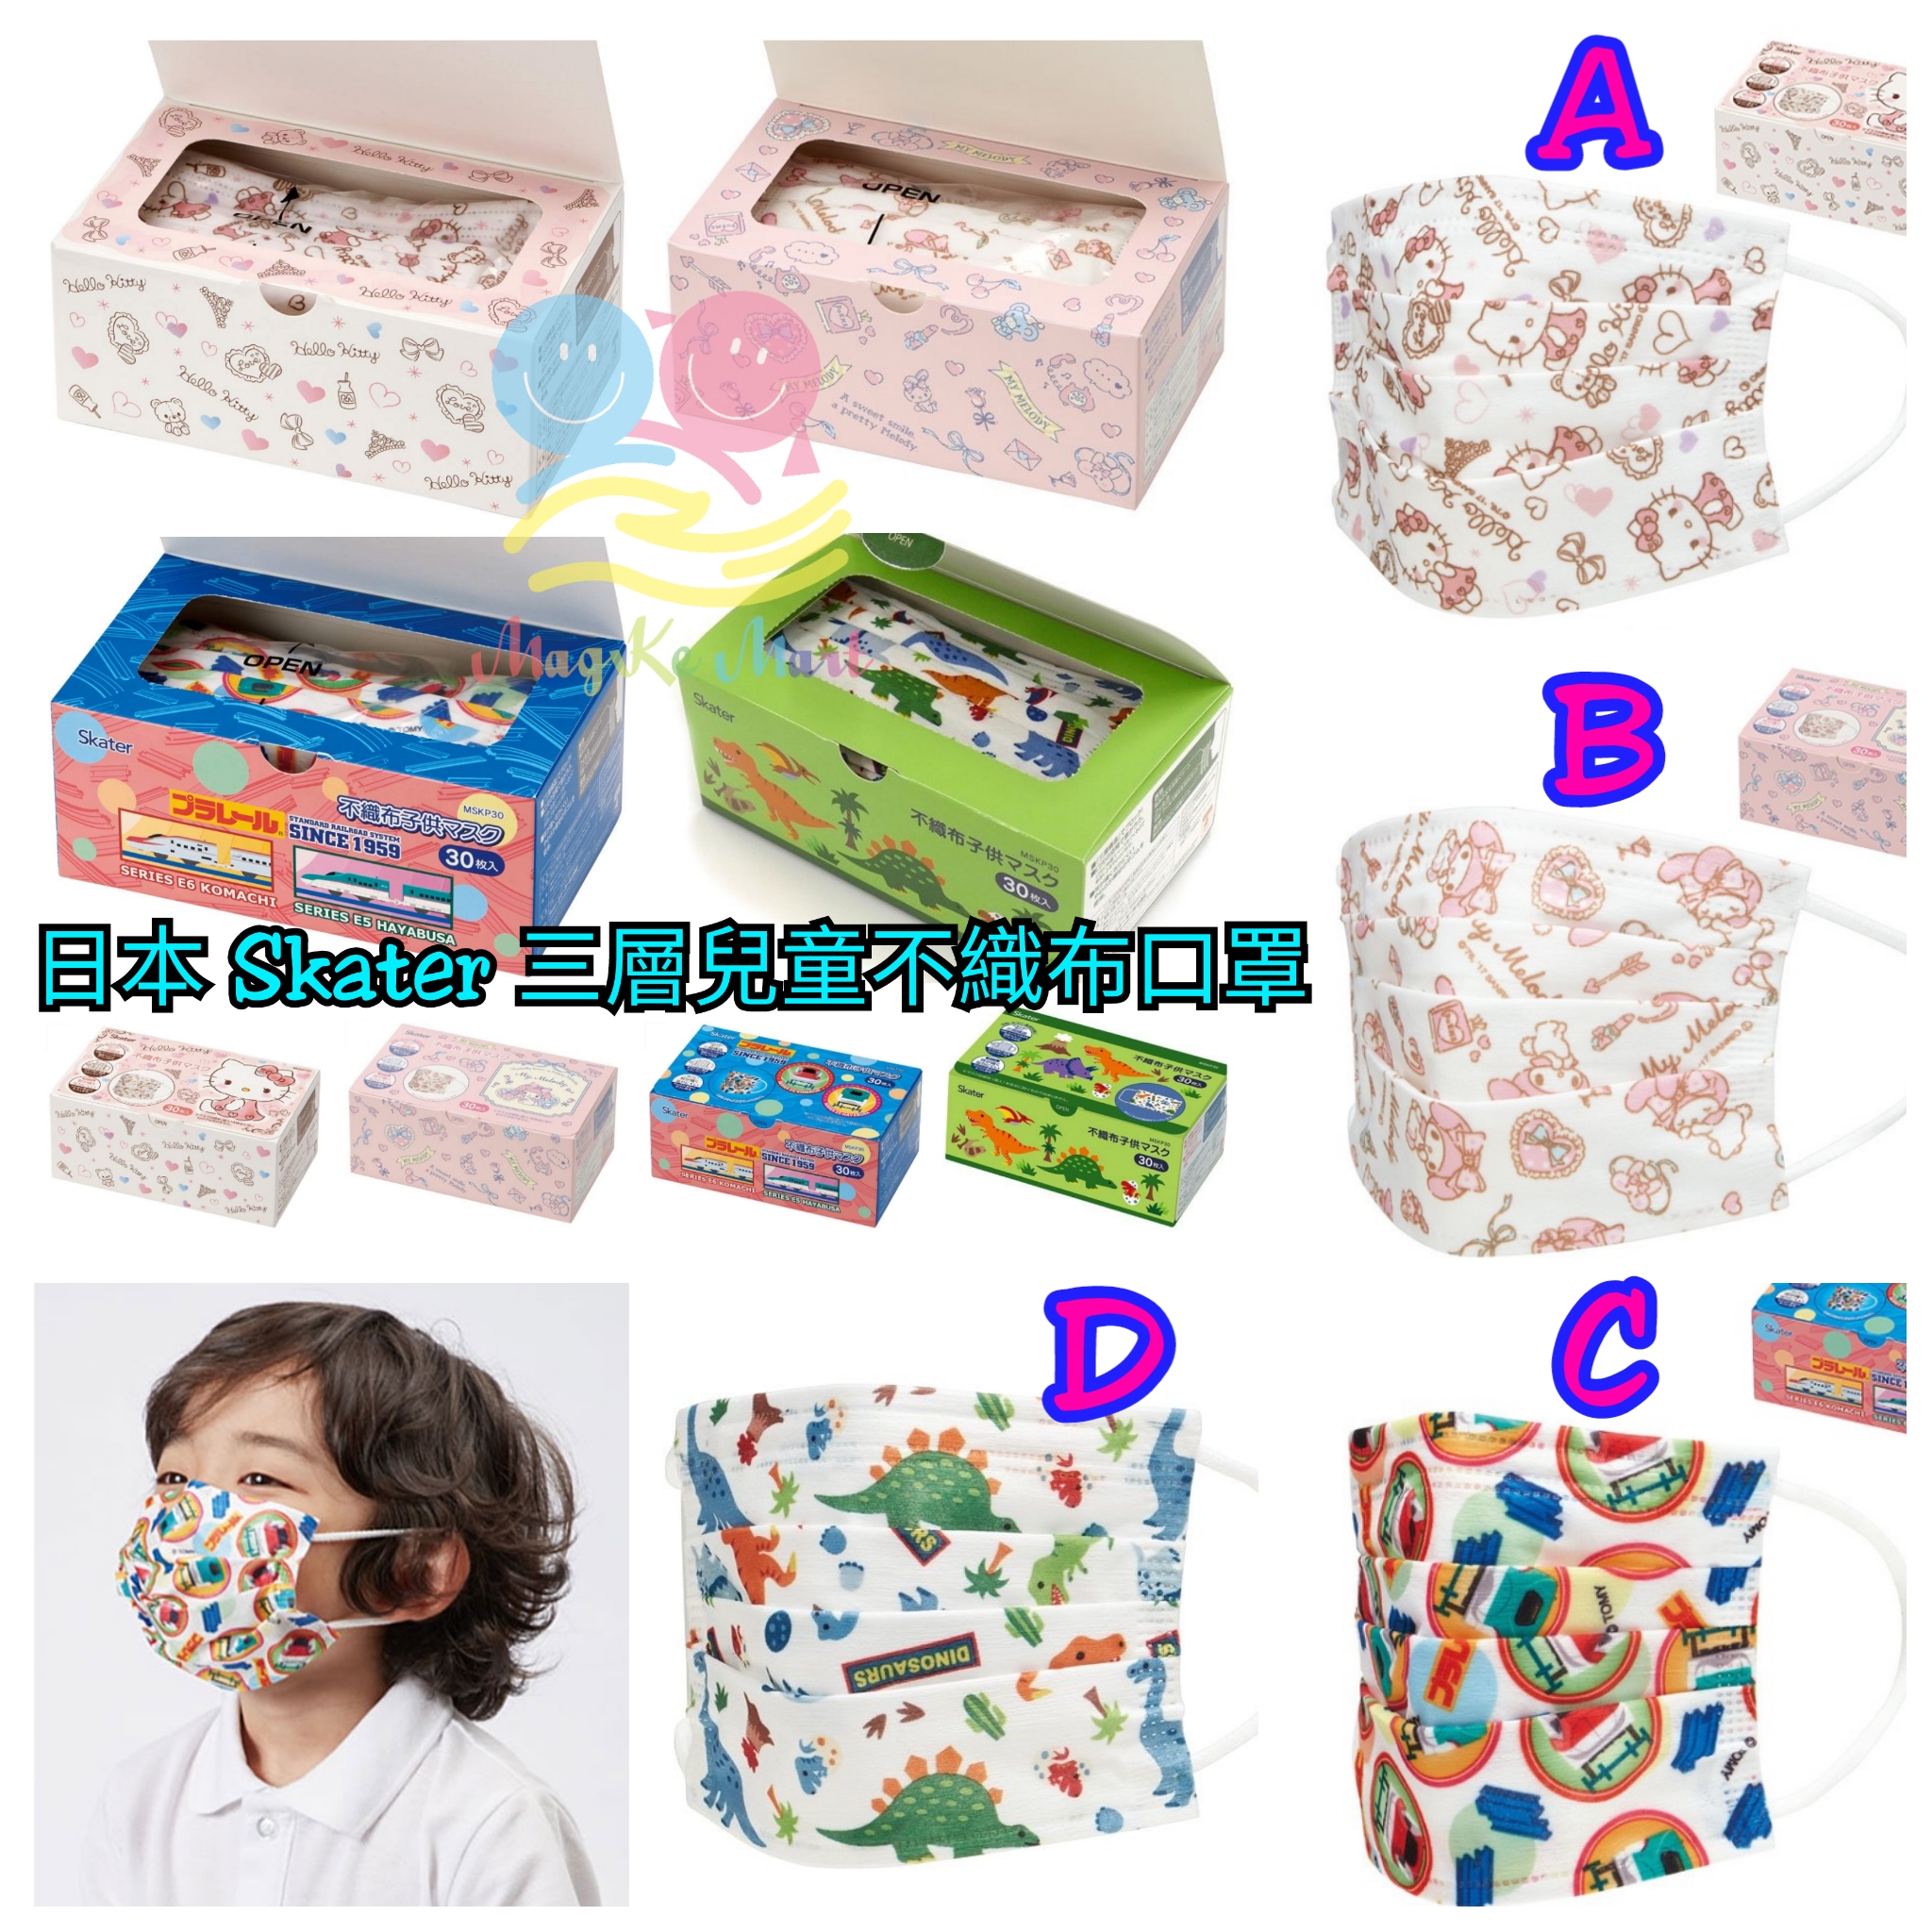 日本 Skater 三層構造兒童不織布口罩(1盒30個) (A) Hello Kitty